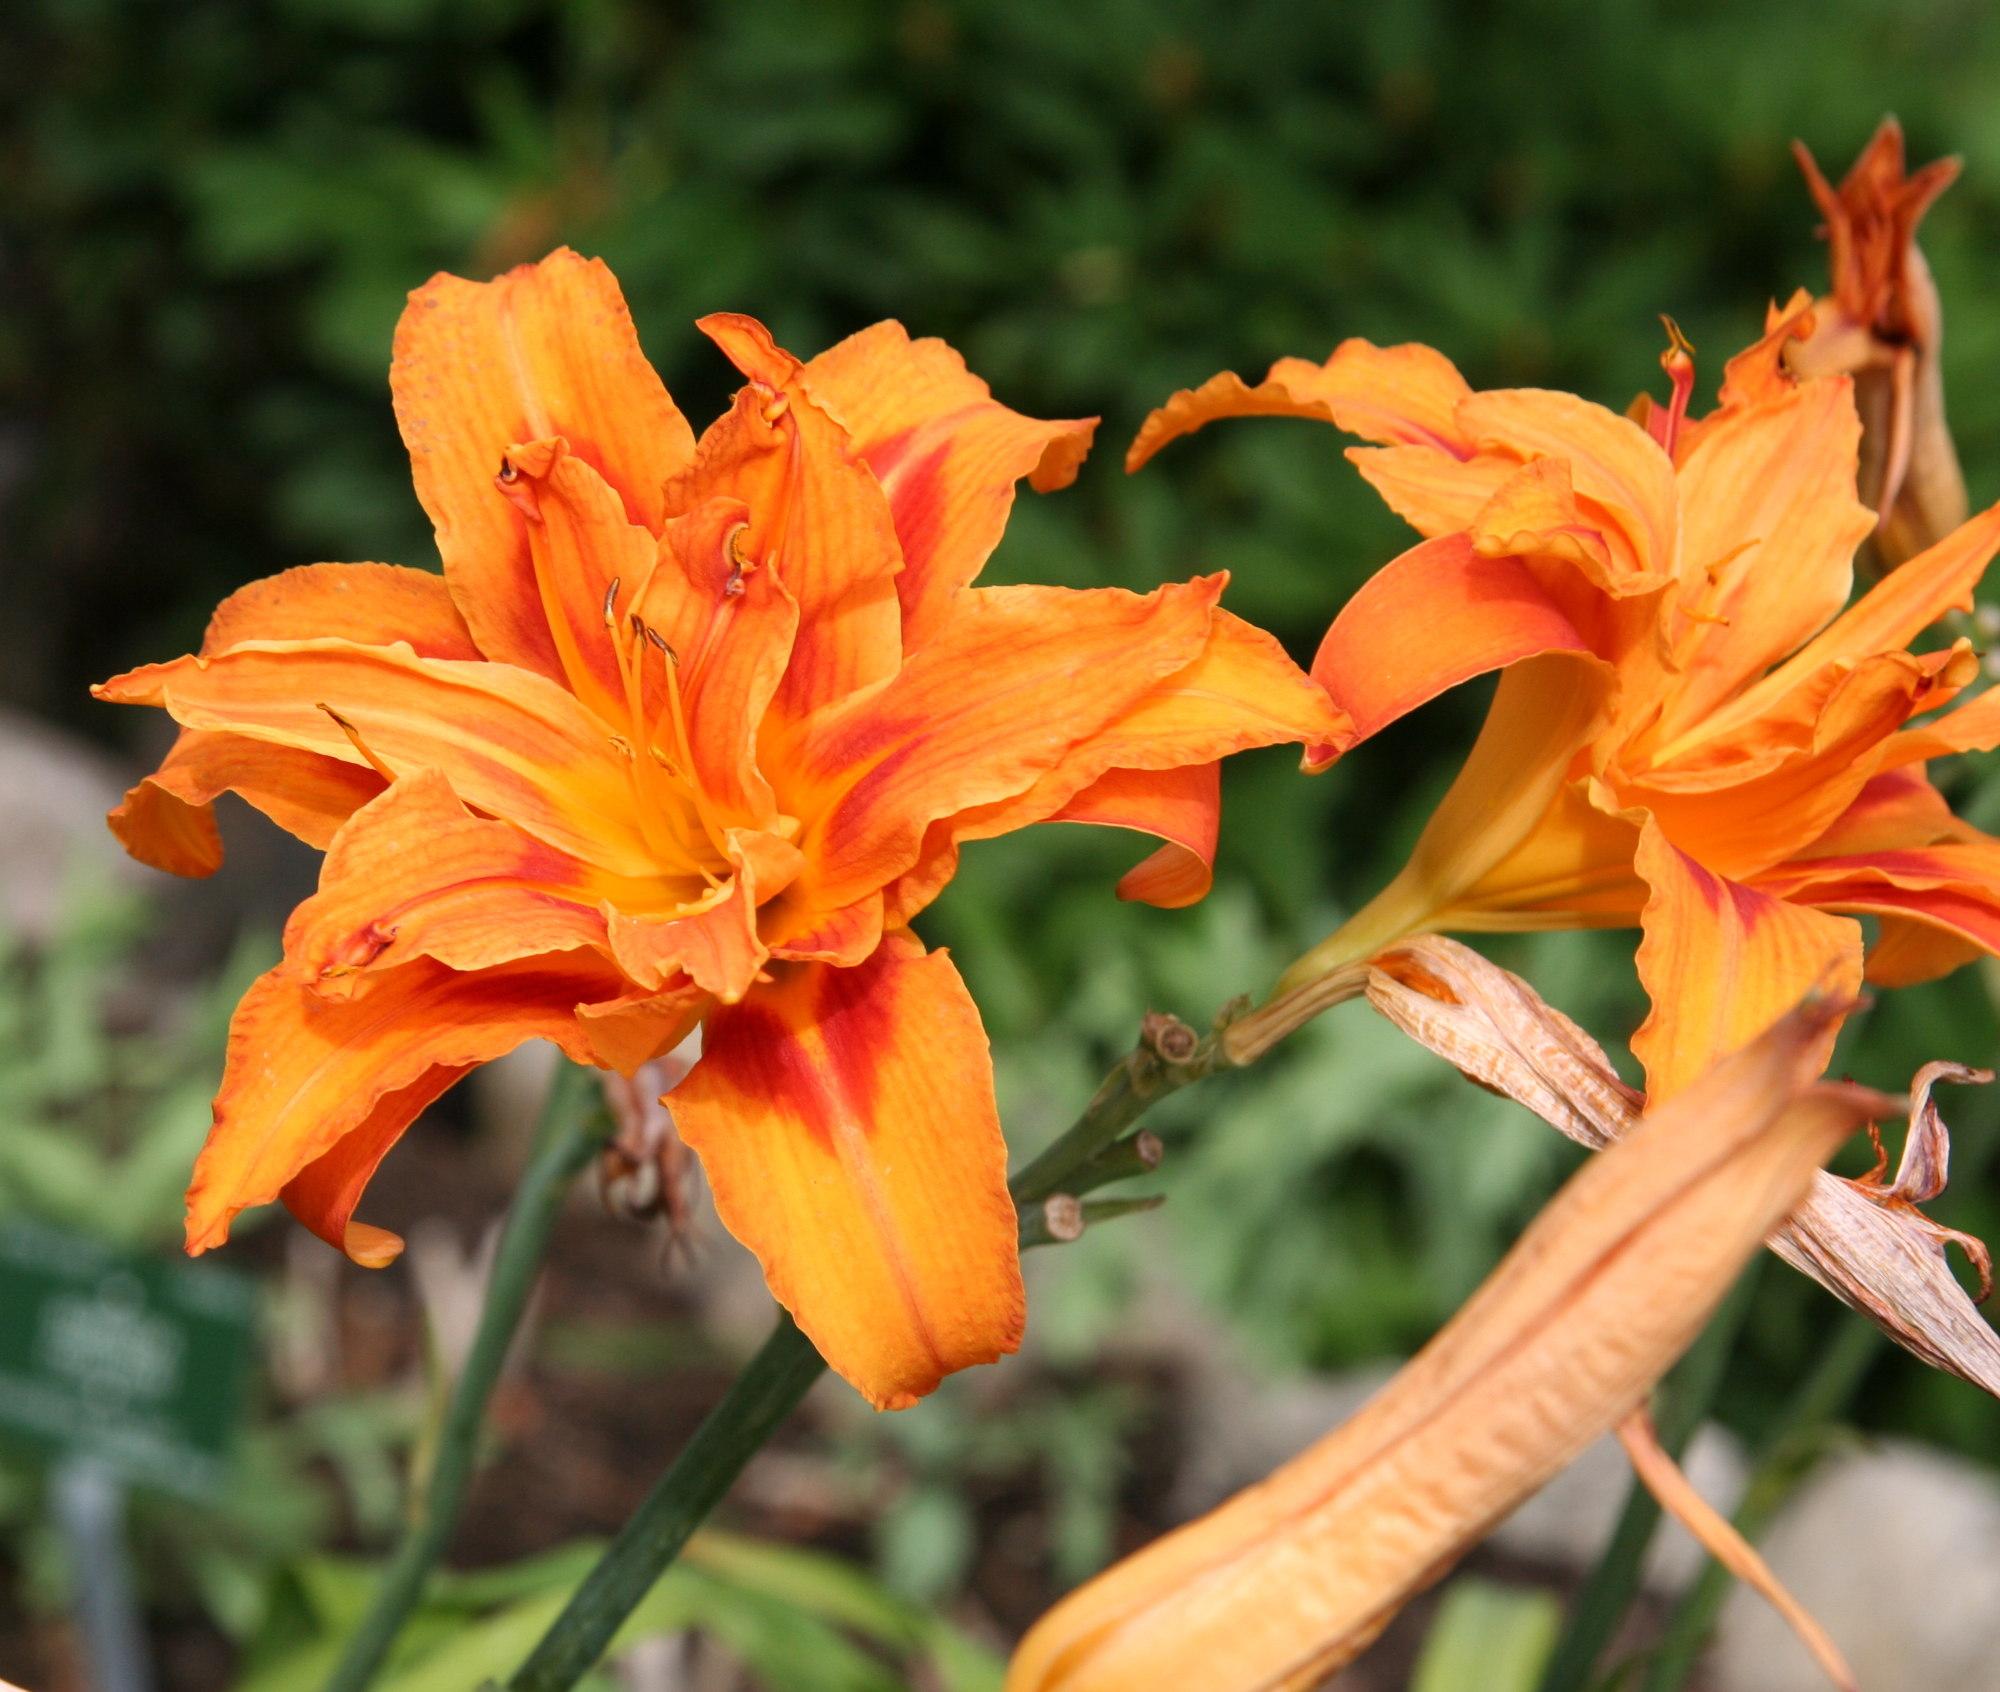 Orange flower with dark-orange center, orange-brown anthers, orange fliaments, lime-orange petiole, orange and green stems.